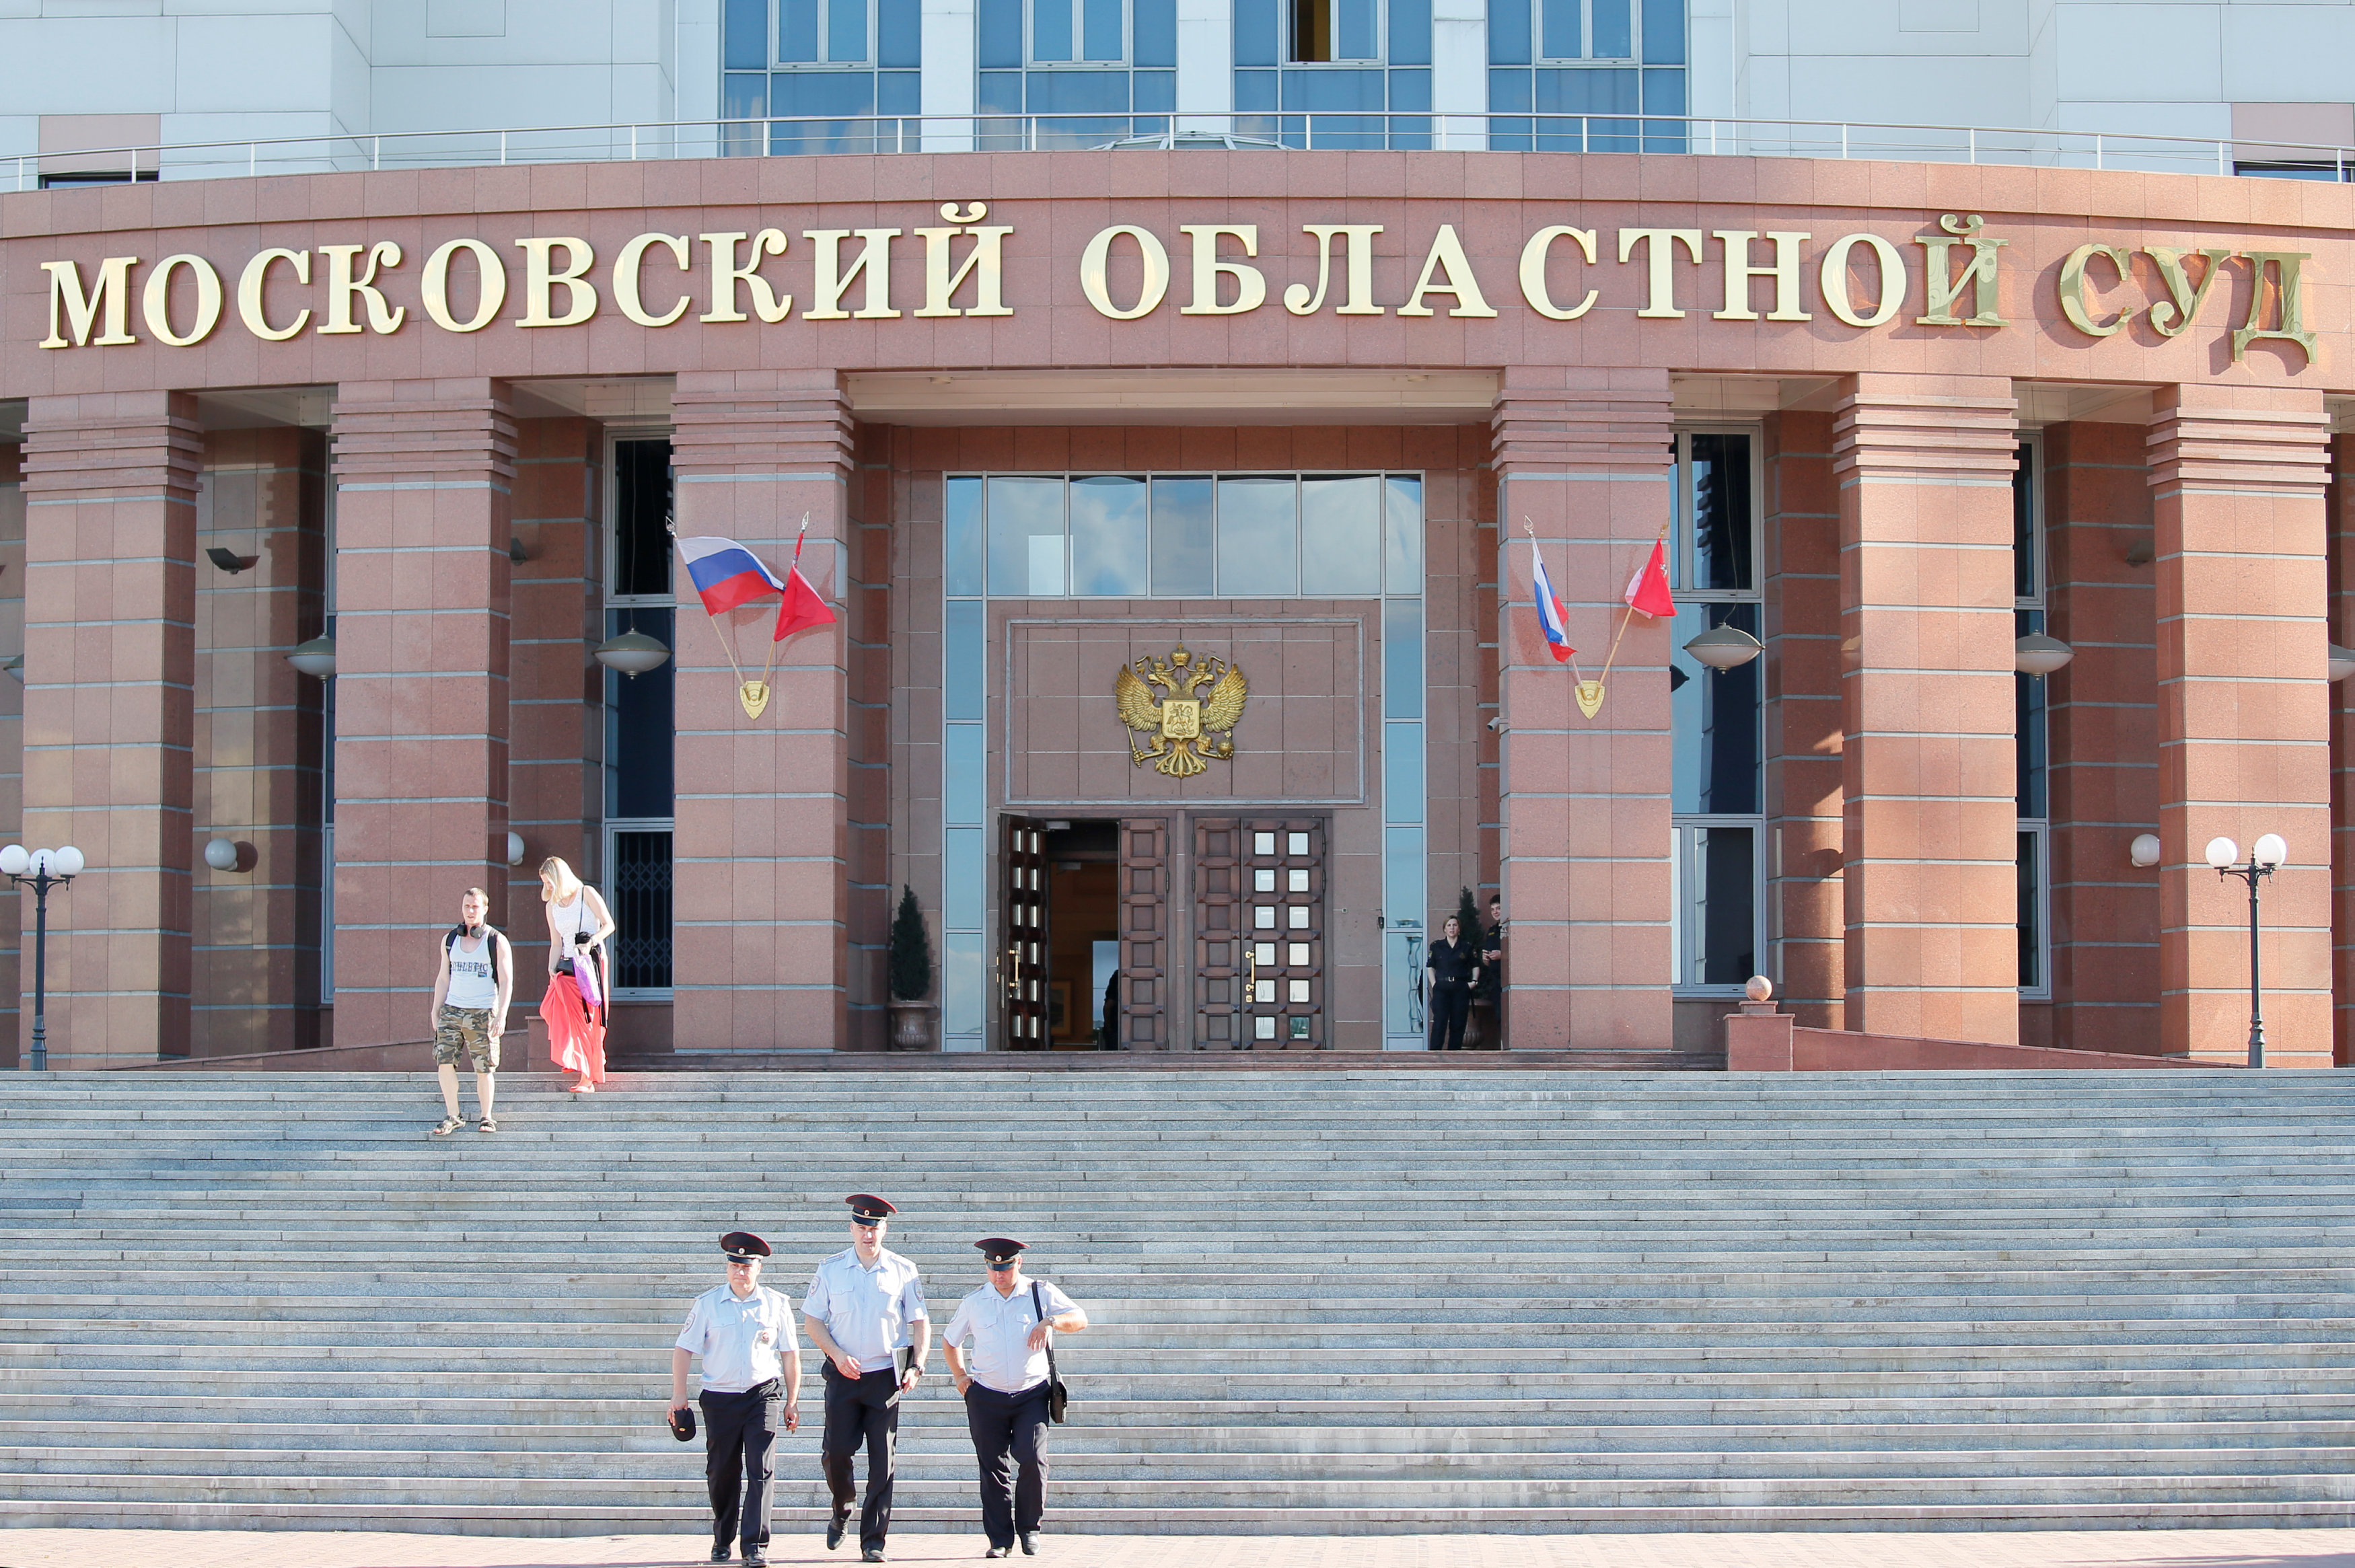 انتشار أمنى مكثف أمام محكمة روسية بعد مقتل 3 متهمين